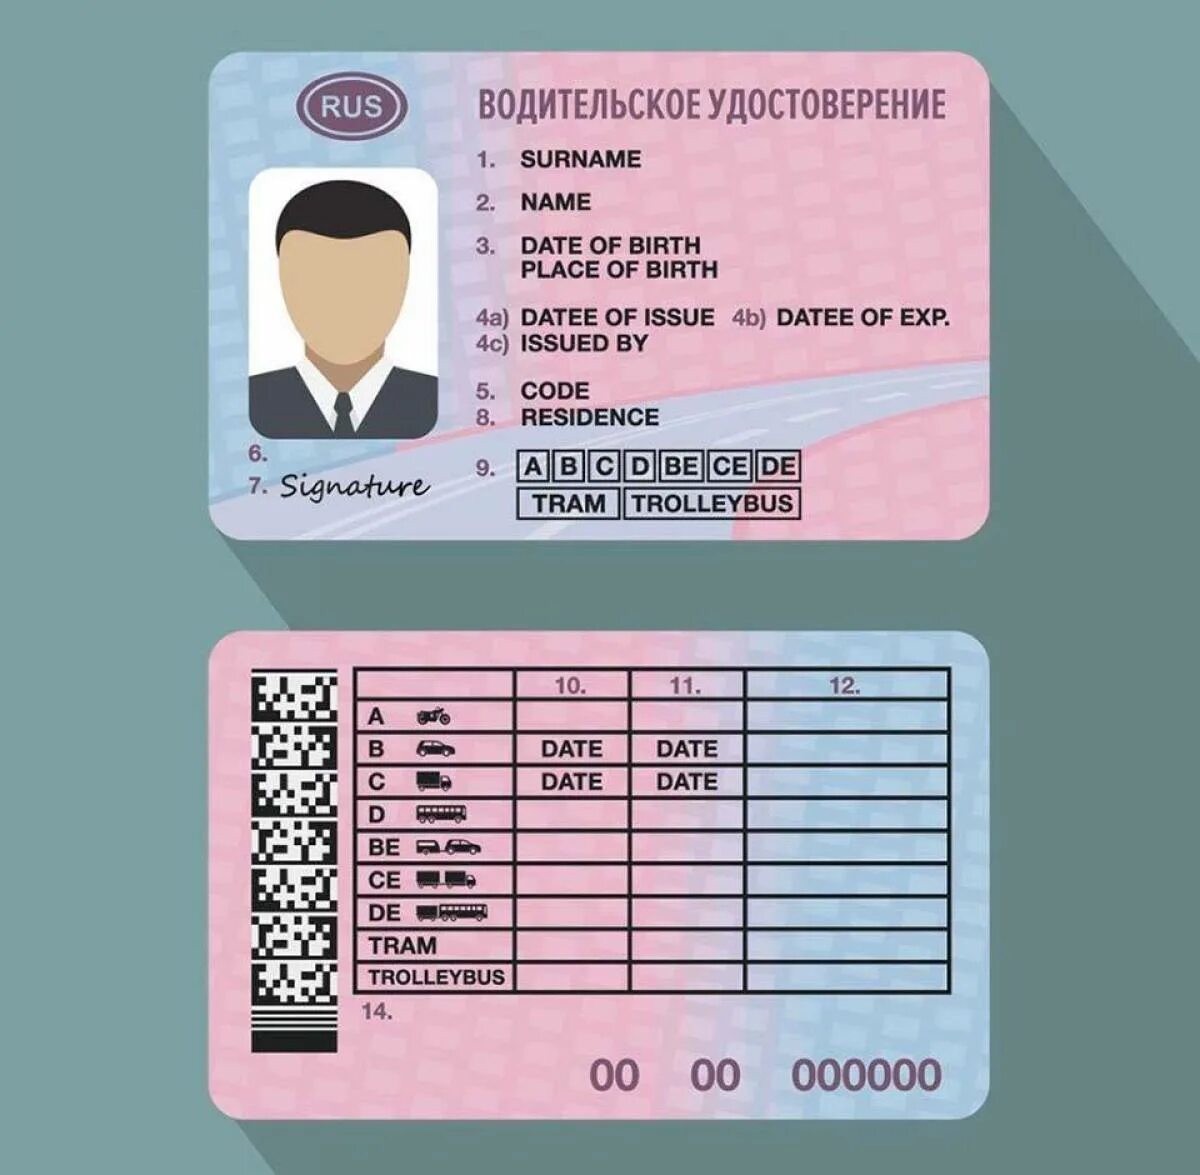 Изменения иностранных водительских прав с 1 апреля. Бланки водительского удостоверения.